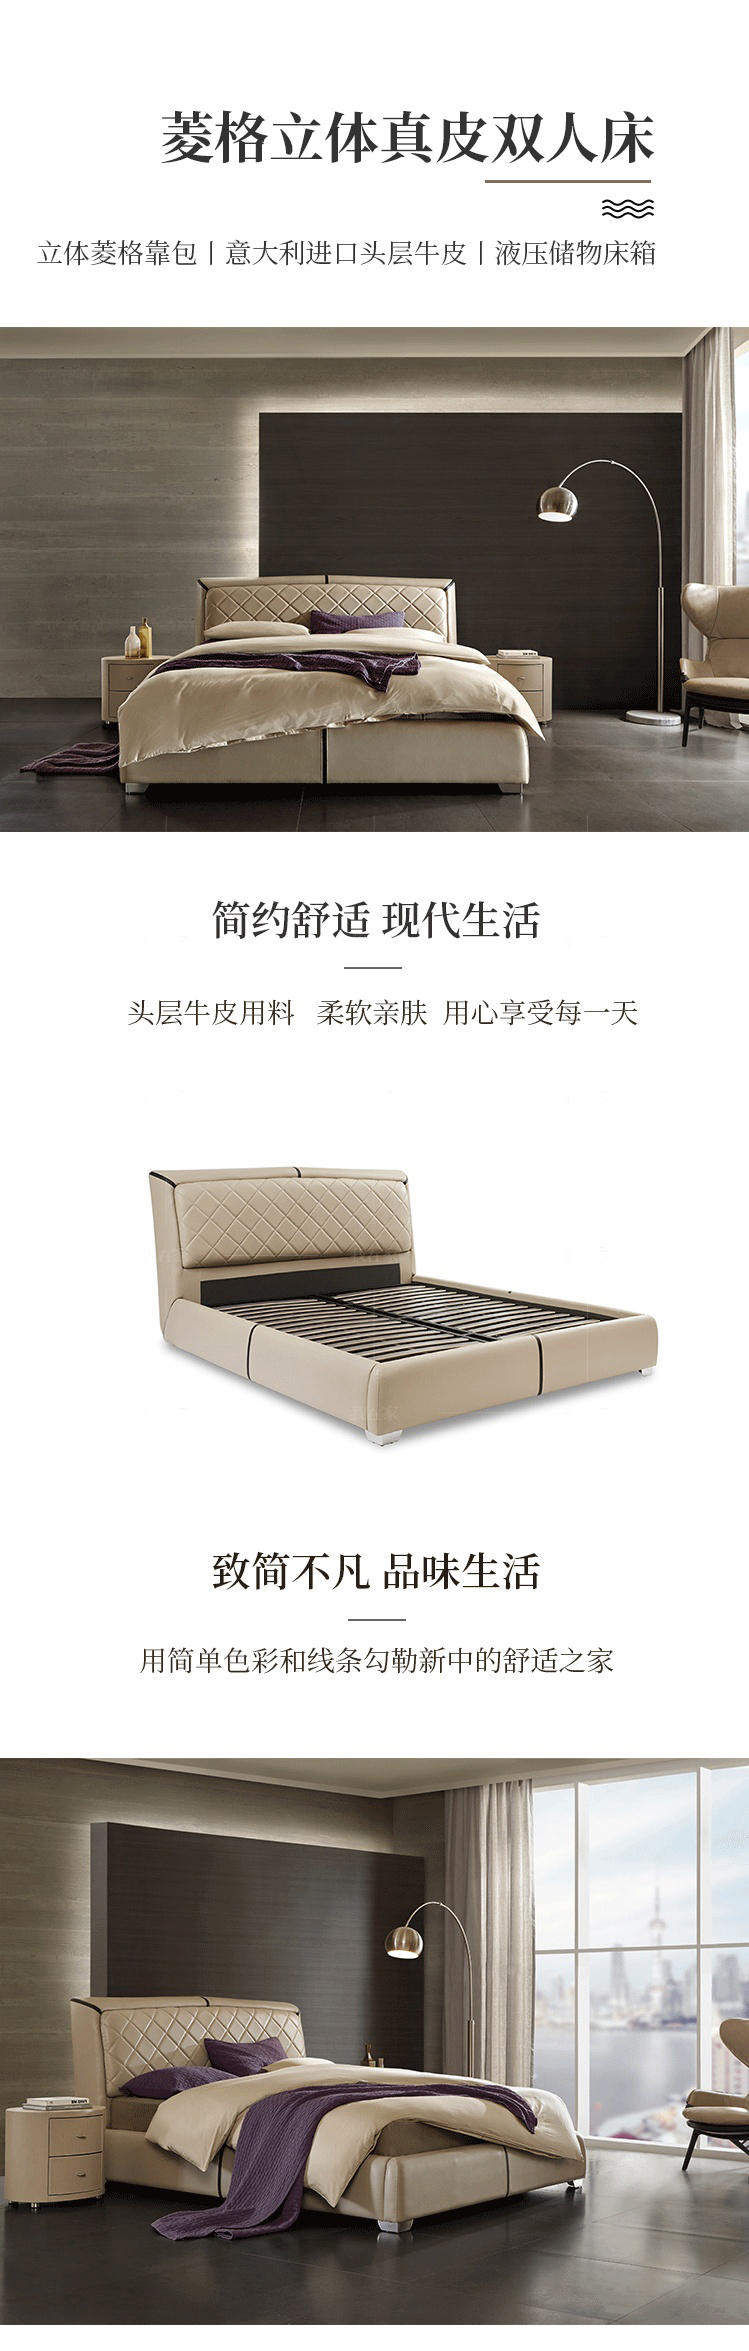 现代简约风格马堡双人床的家具详细介绍